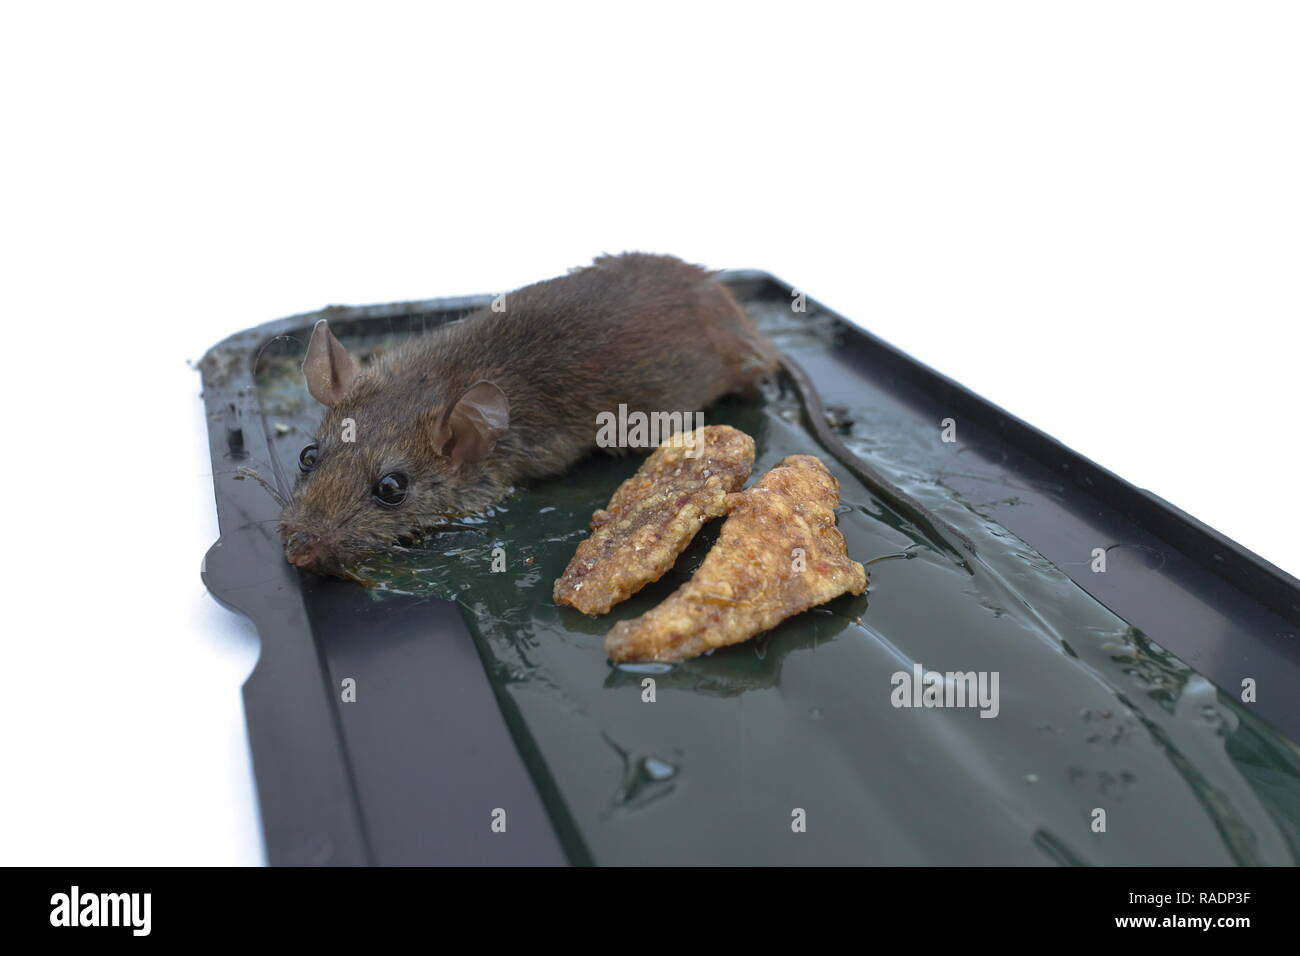 https://c8.alamy.com/compes/radp3f/una-pequena-rata-fue-capturado-en-el-pegamento-ratonera-aislado-en-un-fondo-blanco-radp3f.jpg